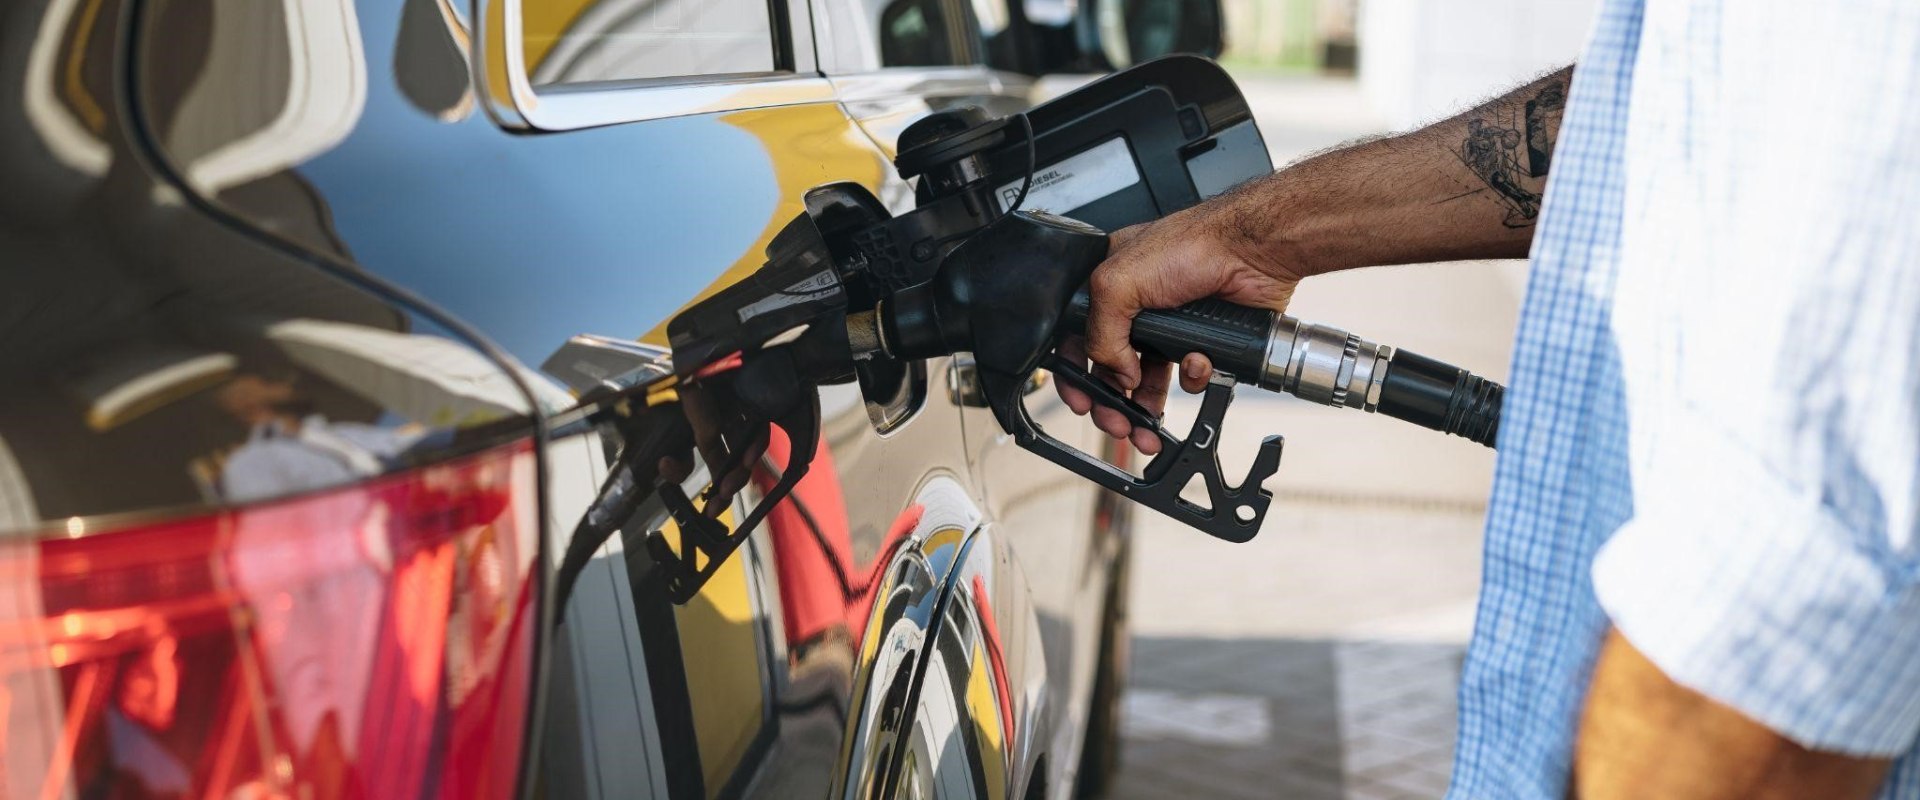 Understanding Fuel Tank Requirements for Vehicles